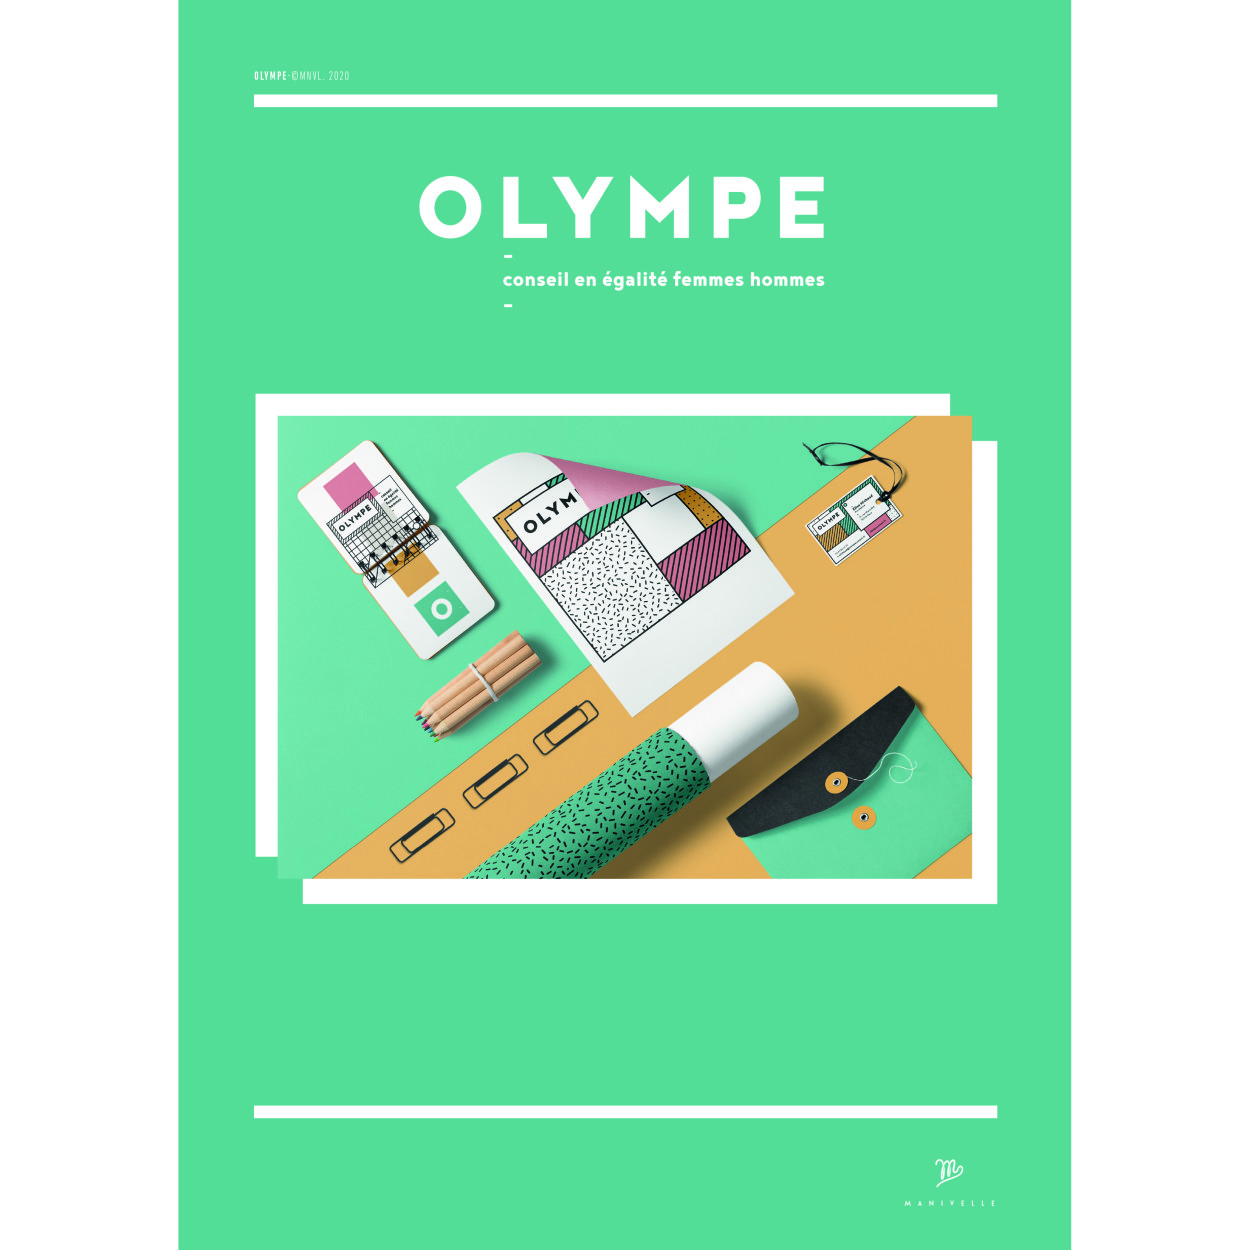 OLYMPE-BRANDING-OK-PLANCHE.jpg